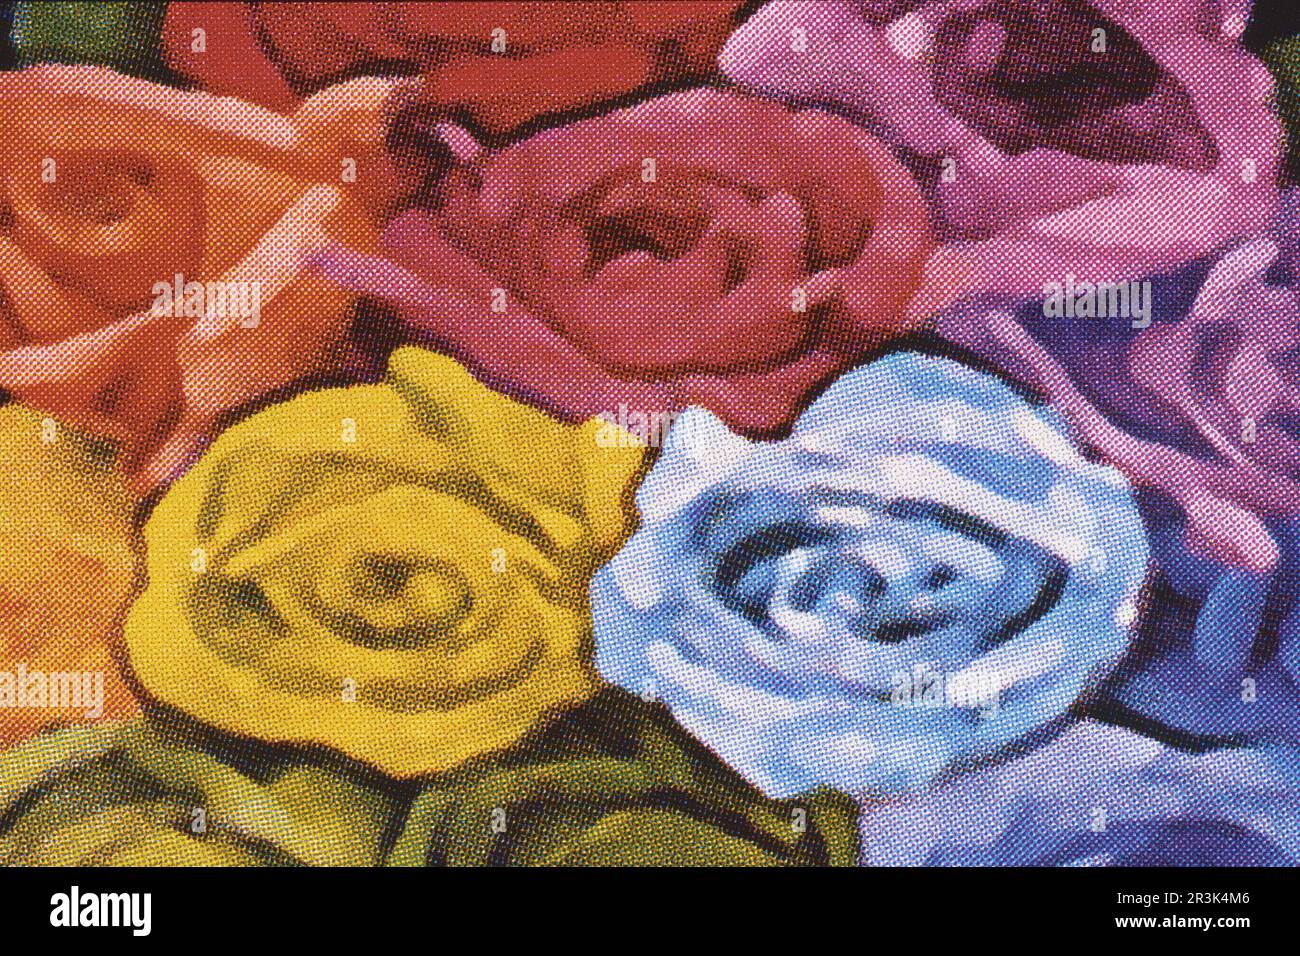 impression agrandie d'une composition florale pour rendre l'écran typographique visible Banque D'Images